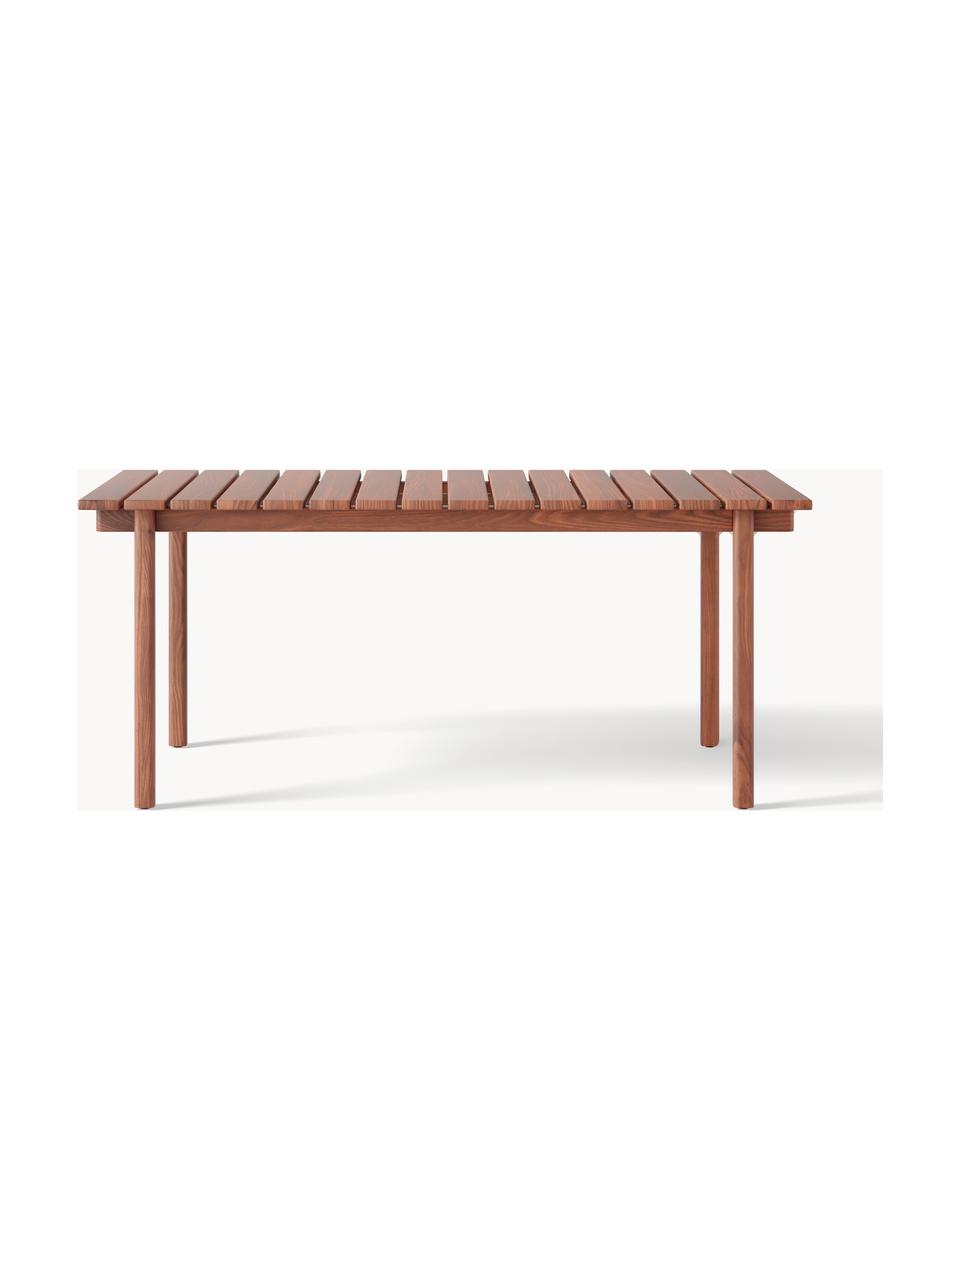 Záhradný stôl Matheus, 180 x 90 cm, Masívne akáciové drevo, kov

Tento produkt je vyrobený z trvalo udržateľného dreva s certifikátom FSC®., Akáciové drevo, Š 180 x H 90 cm